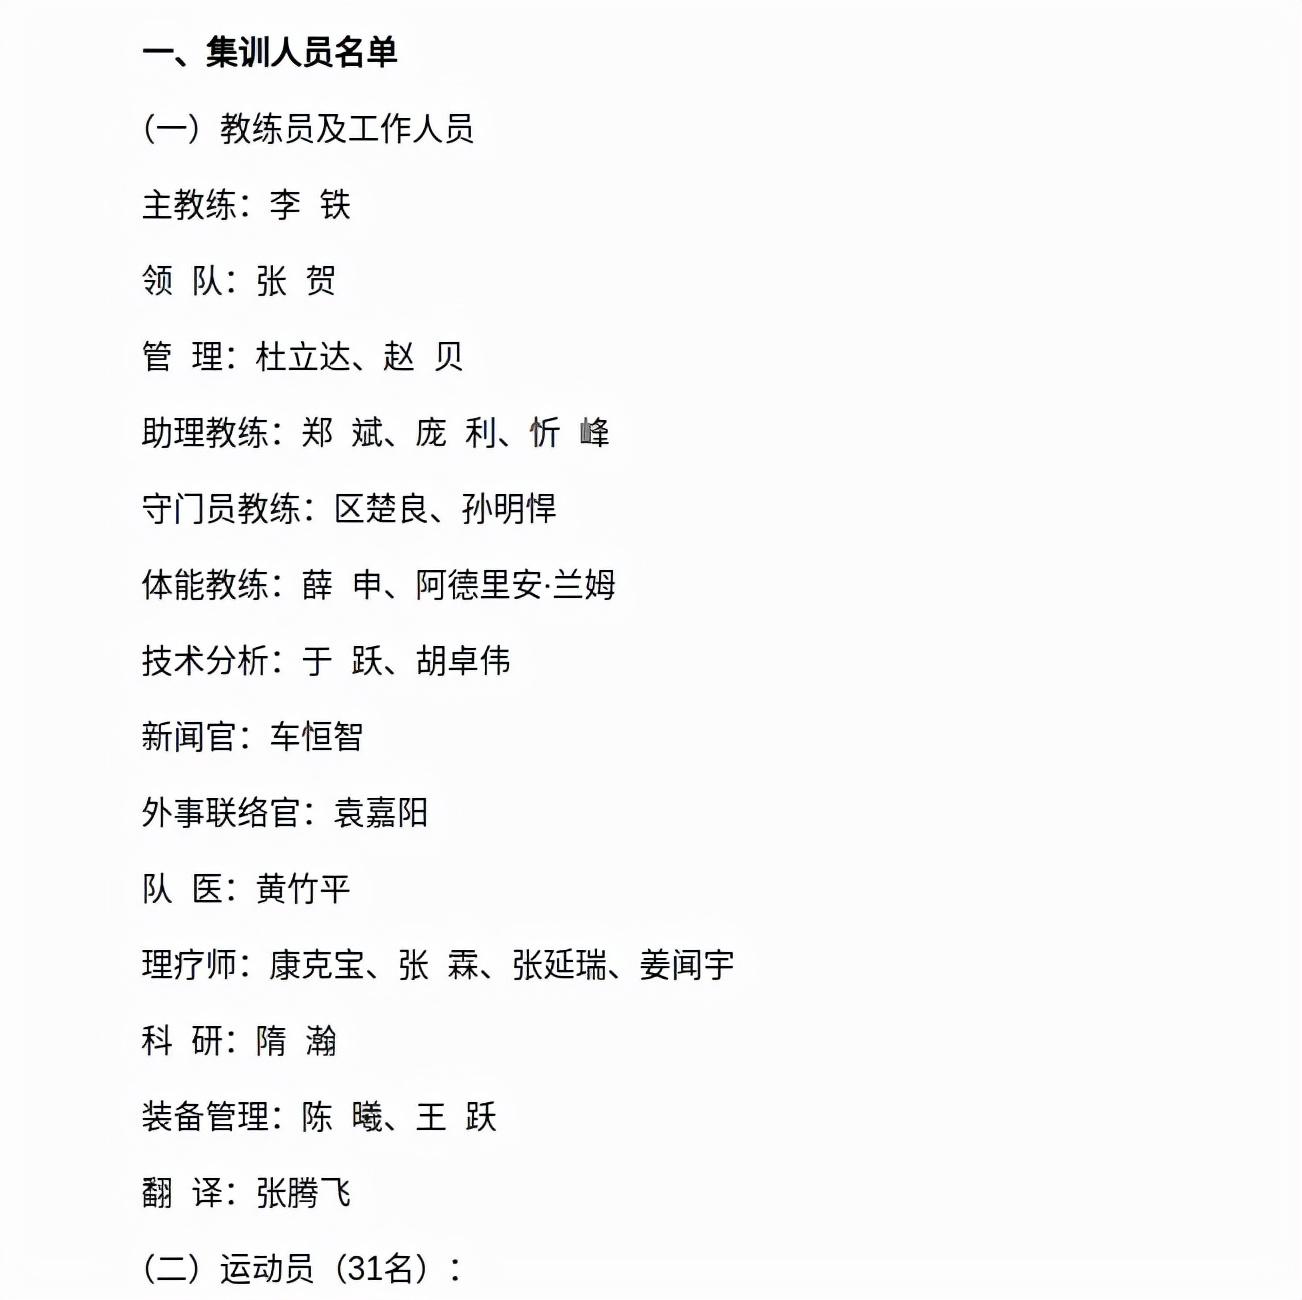 中国男足的集训名单，亮点在教练组，有肉大家一起吃(1)